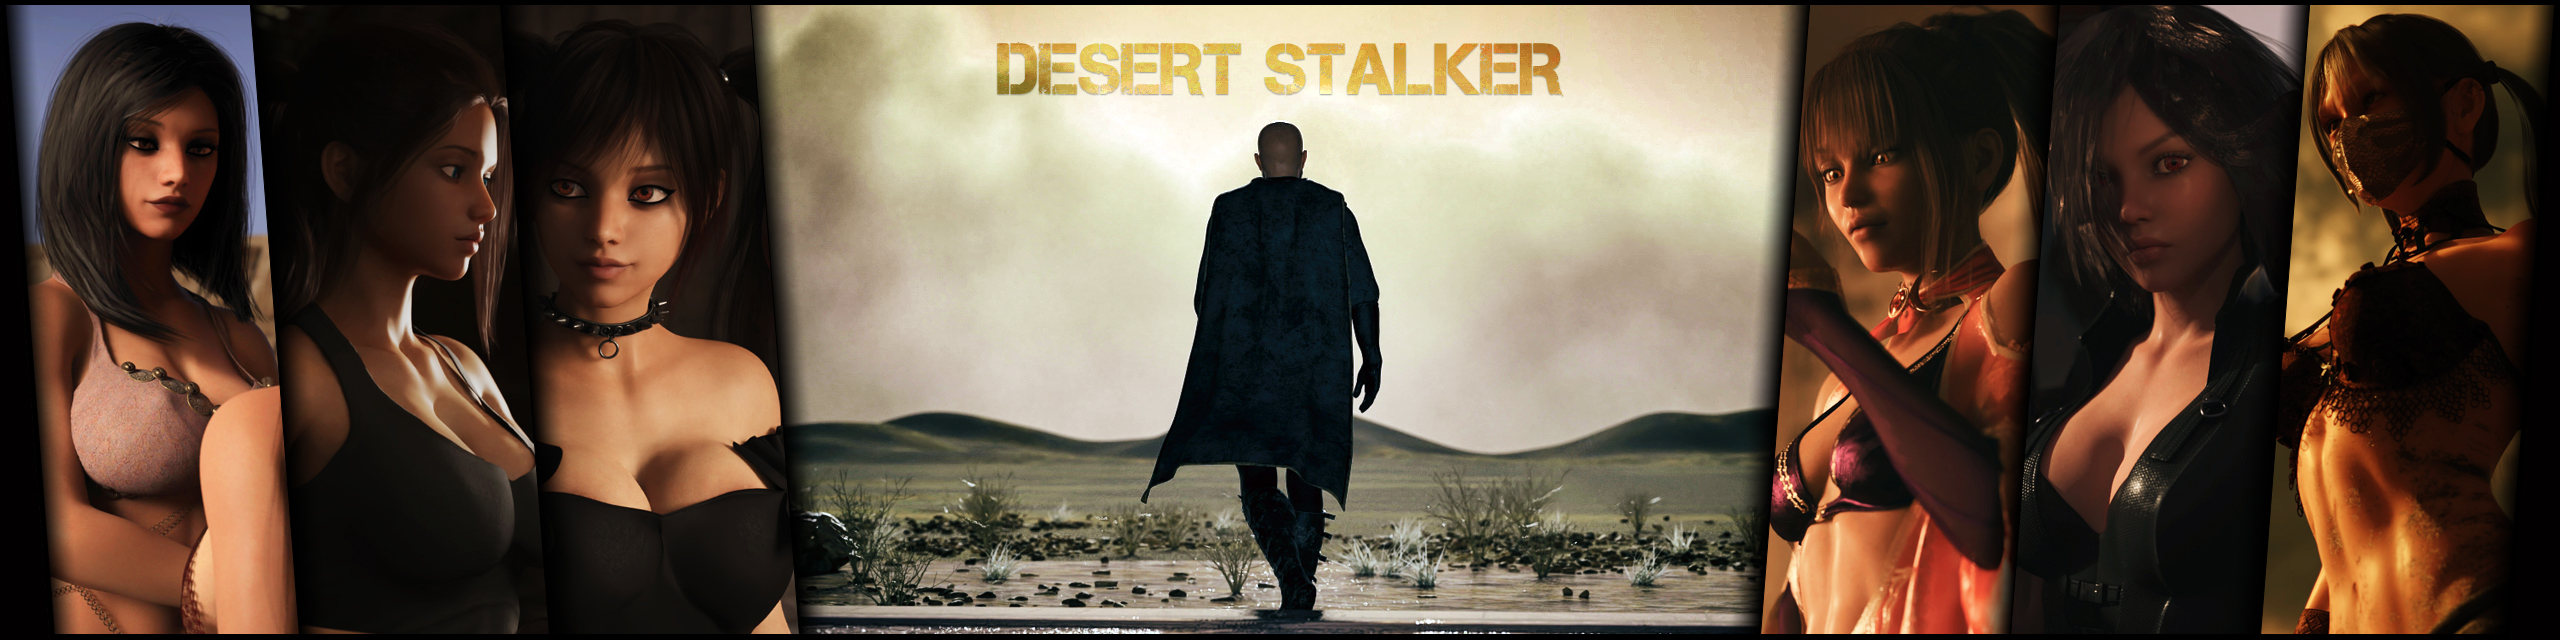 [18+ Việt Hóa Thô] Desert Stalker (v0.13c) – Trở Thành Thợ Săn Sa Mạc Lần Theo Vết Tích Cổ Xưa Cùng Những Cô Nàng Nóng Bỏng | Android, PC